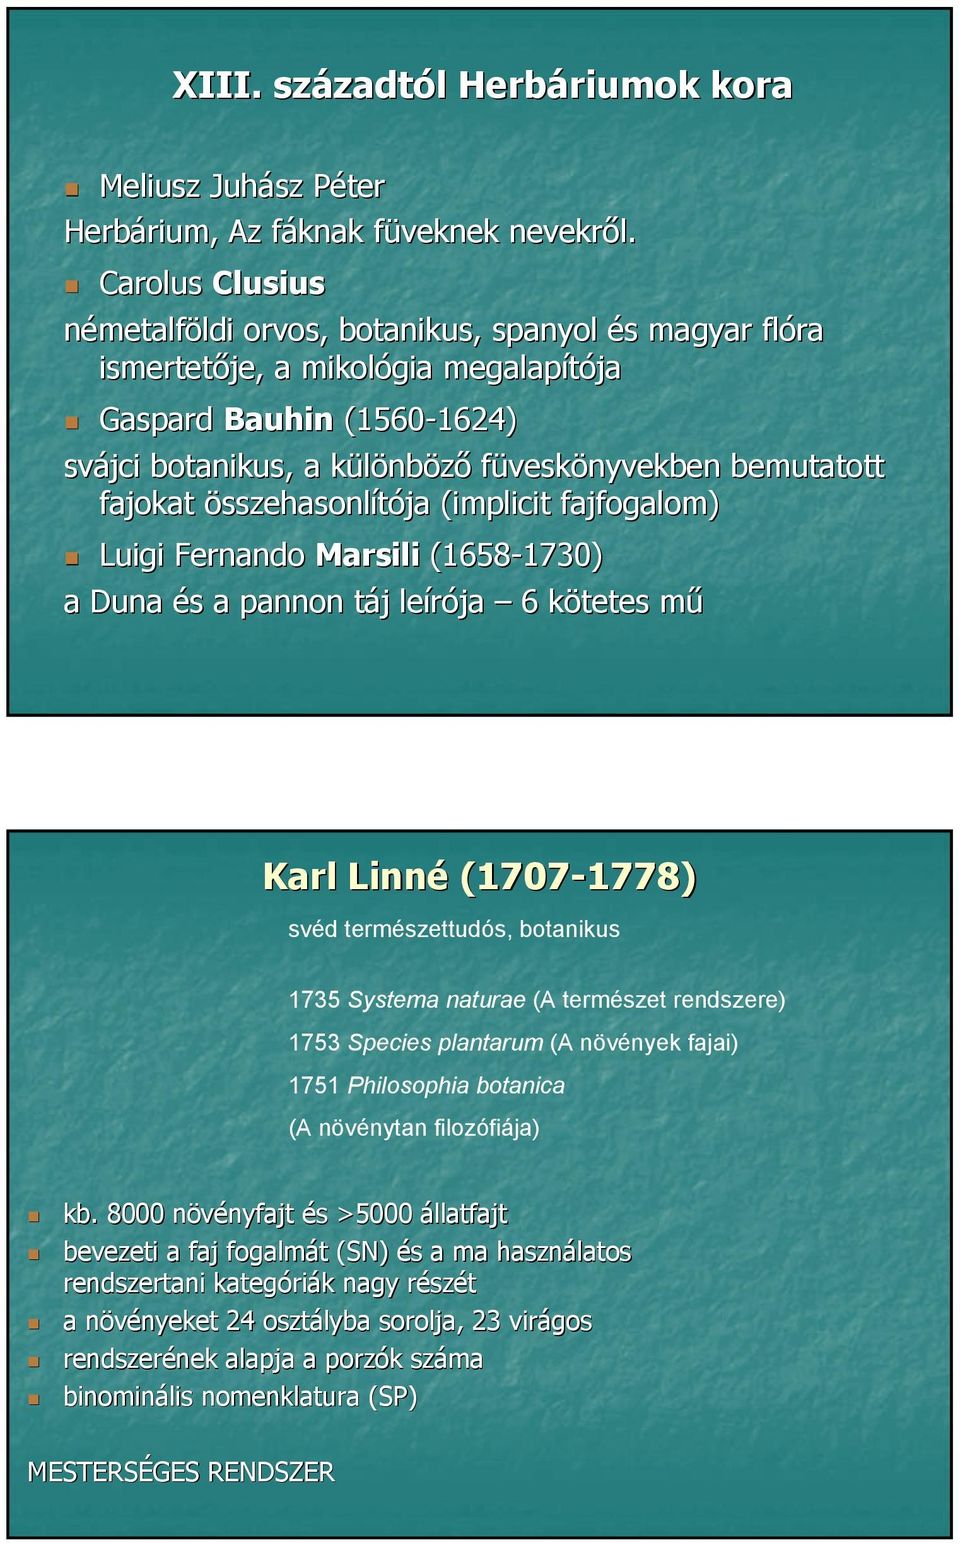 fajokat összehasonlítója (implicit fajfogalom) Luigi Fernando Marsili (1658-1730) 1730) a Duna és a pannon táj leírója 6 kötetes mű Karl Linné (1707-1778) 1778) svéd természettudós, botanikus 1735